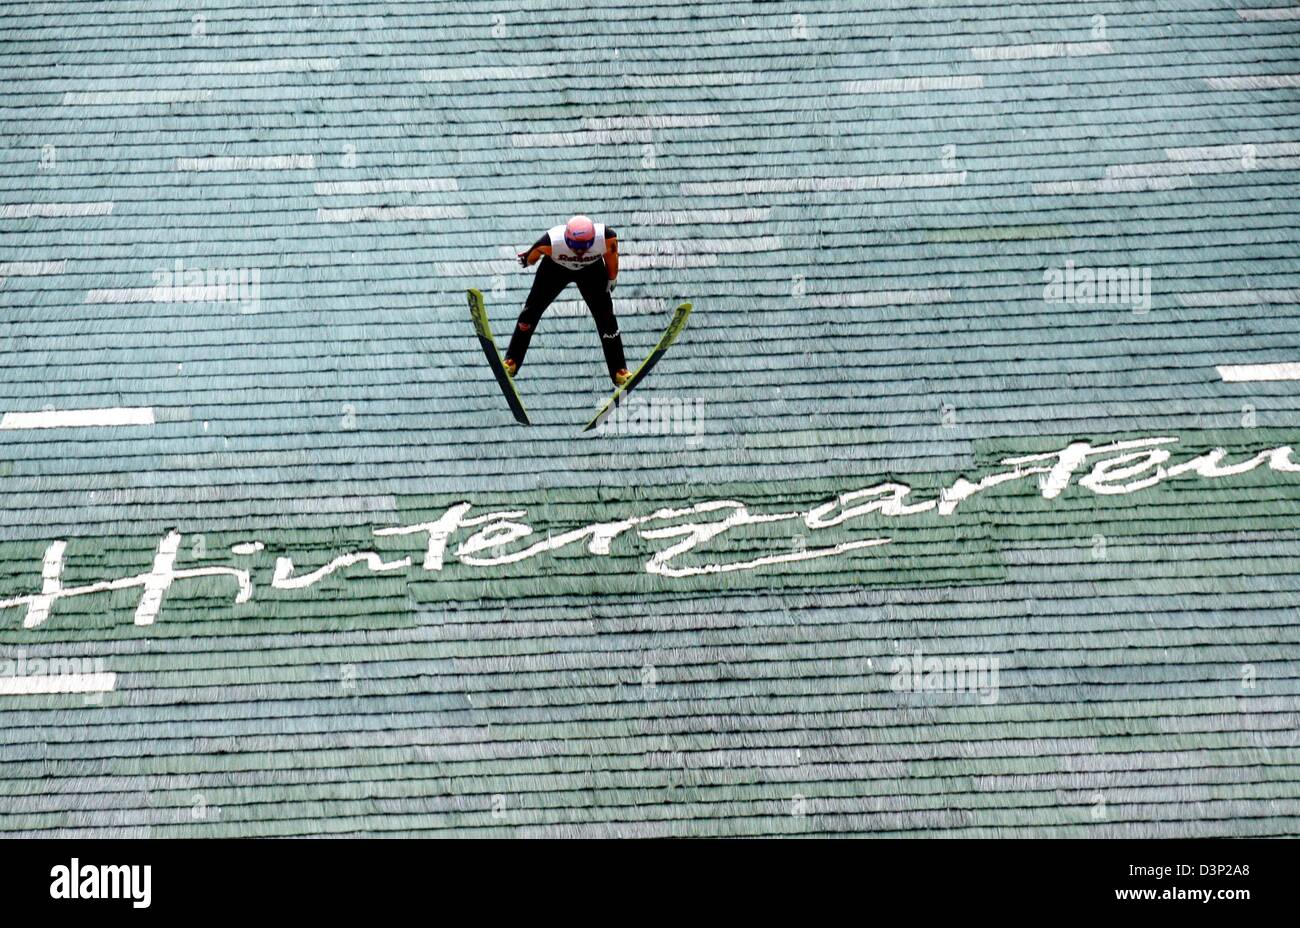 Puente de esquí alemán Georg Spaeth sobrevuela el escrito 'Hinterzarten' durante su salto ganador en el FIS Sommer Grand Prix 2005 en Hinterzarten, Alemania, el domingo 06 de agosto de 2006. Spaeth ganó por delante del segundo finalista austriaco Andreas Kofler y el tercer clasificado, Gregor Schlierenzauer austríaca. Foto: Rolf Haid Foto de stock